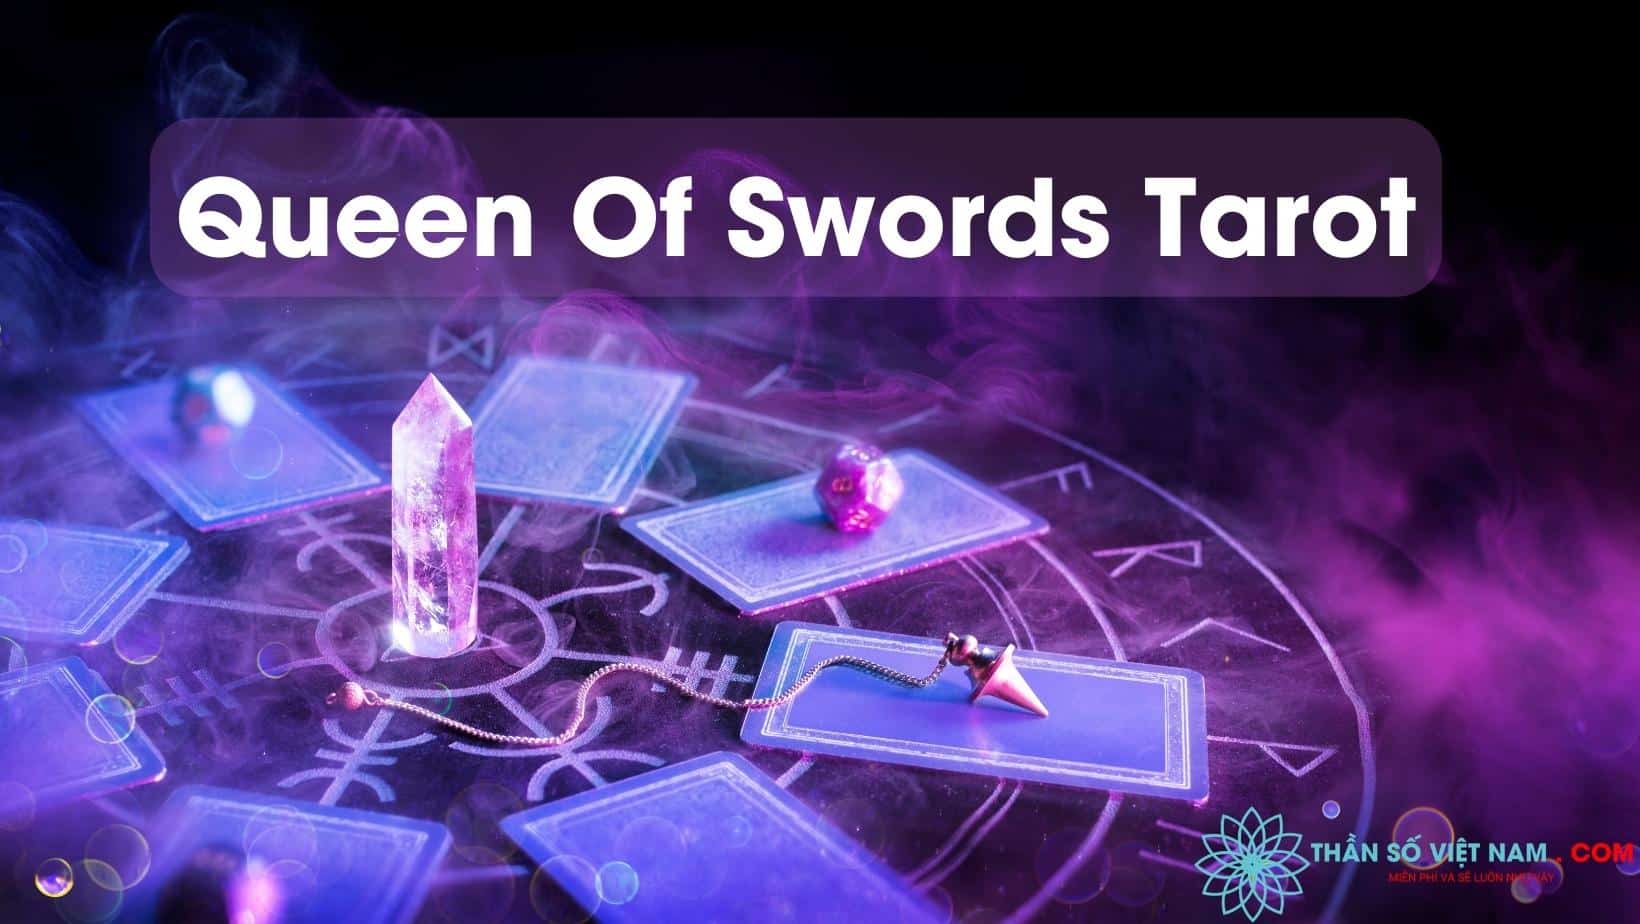 Queen Of Swords Tarot không chỉ là lá bài Tarot thông thường, nó còn mang trong mình ý nghĩa sâu sắc về sự quyết đoán và sáng suốt của con người. Hãy khám phá chuỗi các thủ tục, các cách bói tarot để hiểu rõ hơn về lá bài này.